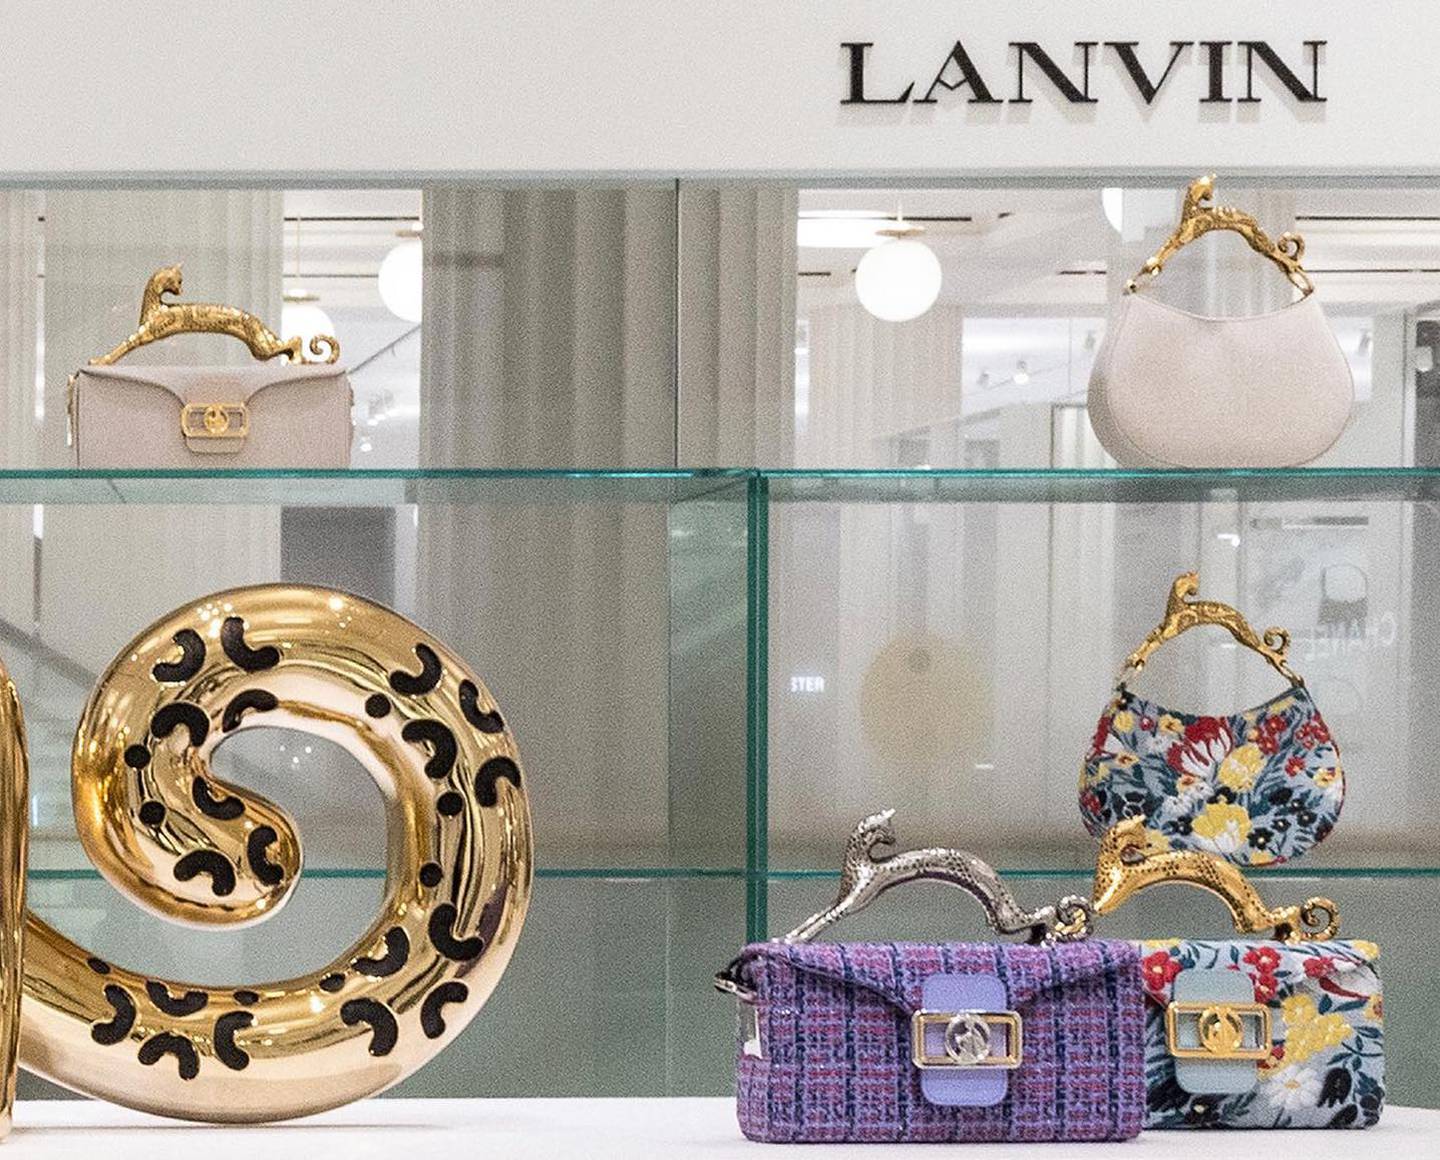 A Lanvin boutique shelf.